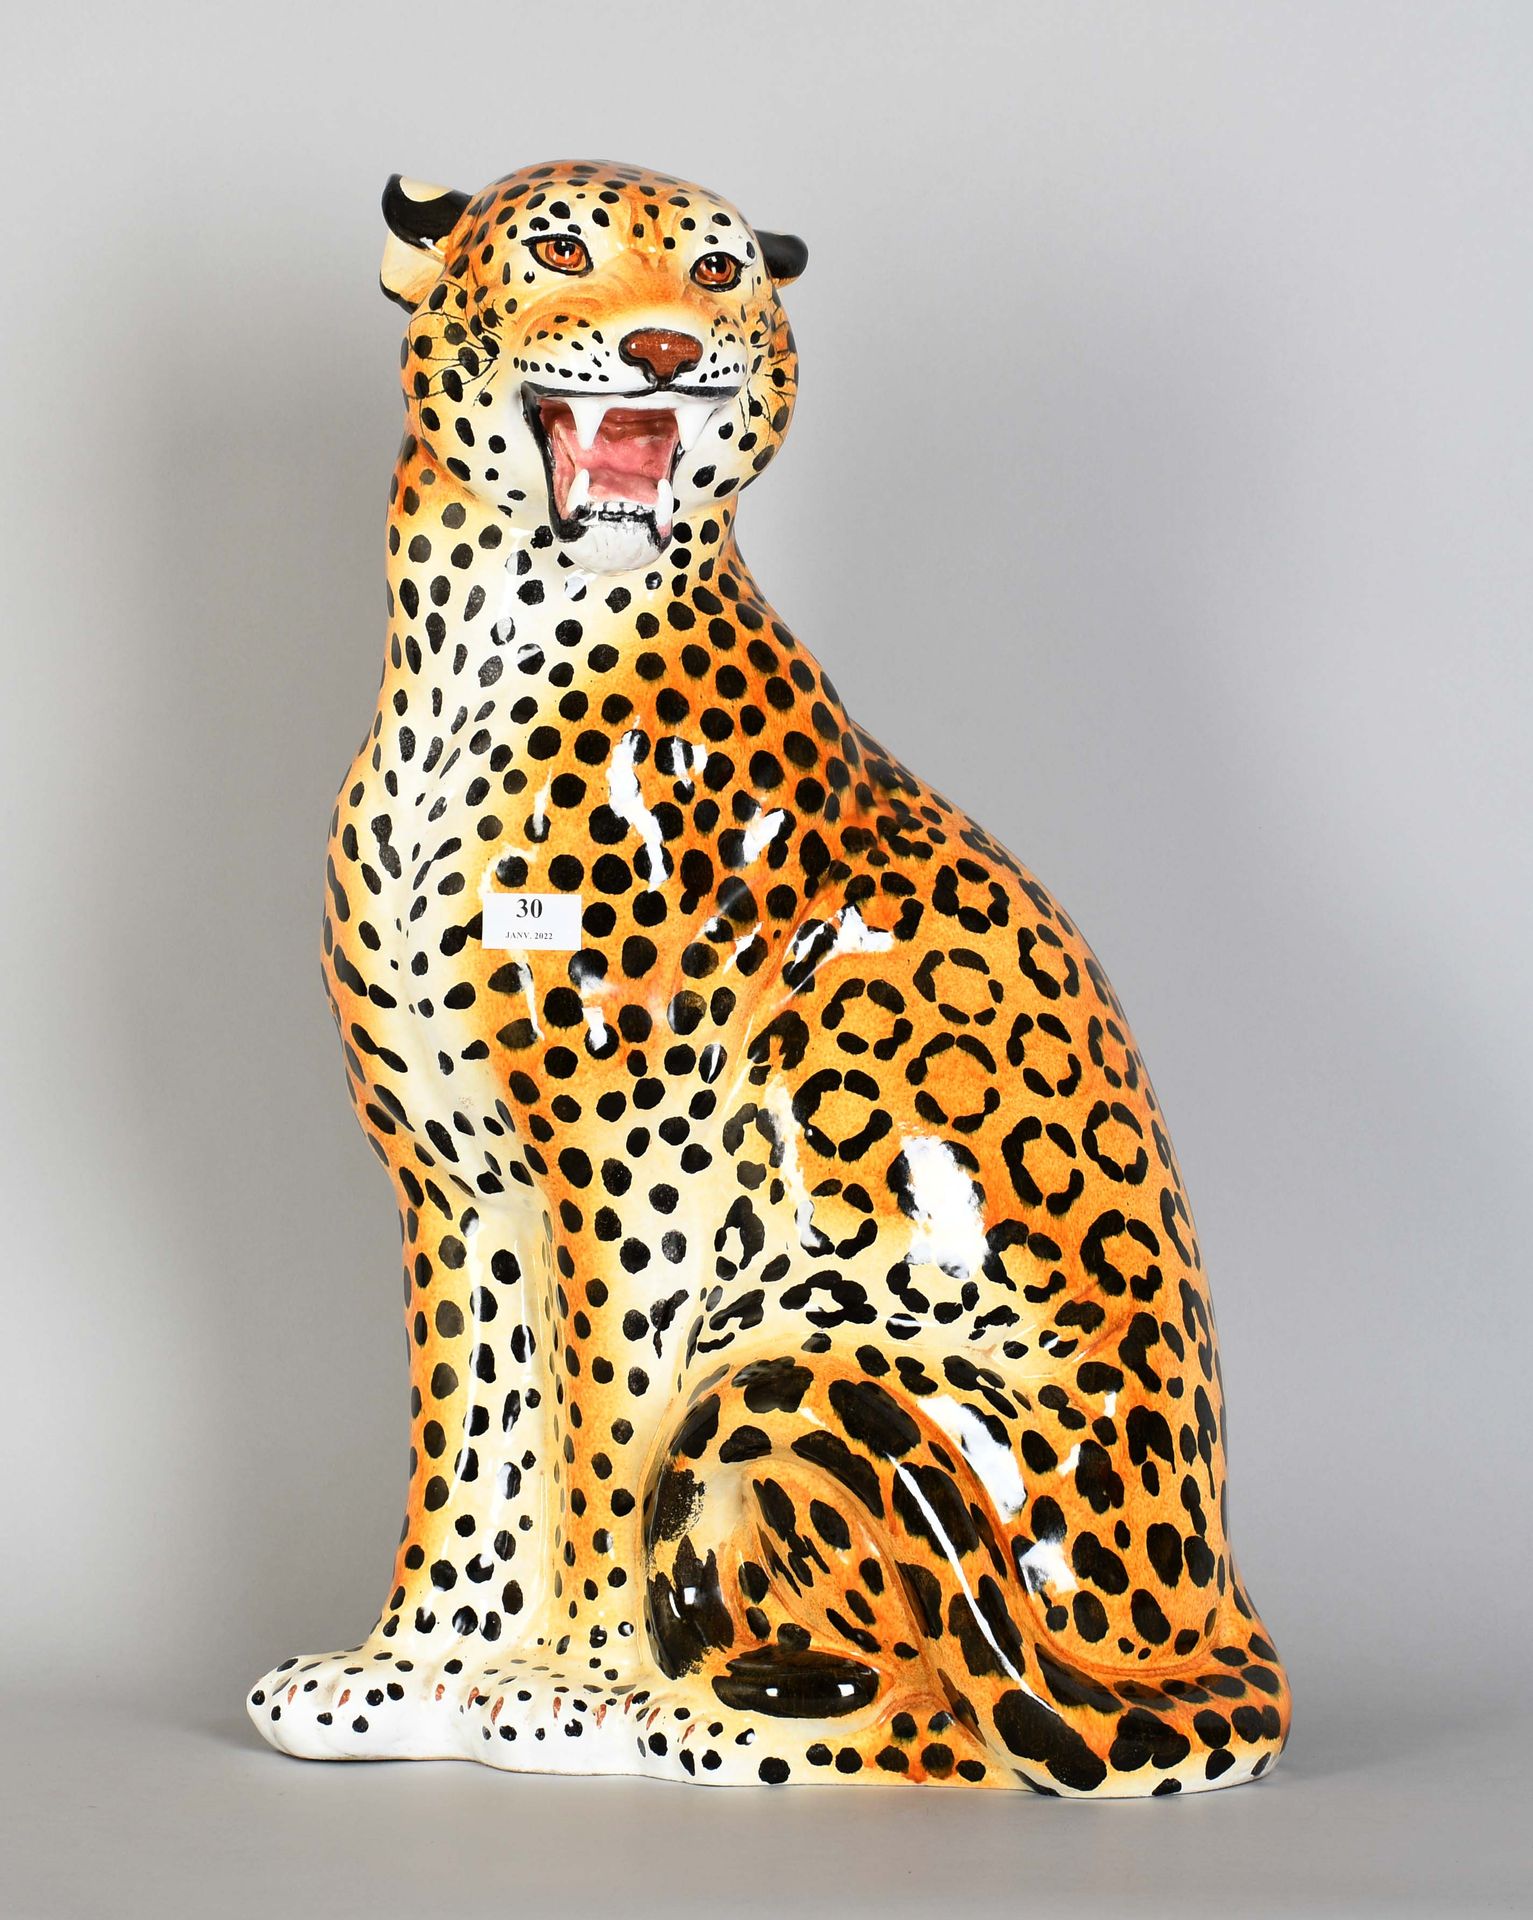 Null Sitzender Leopard aus polychromer italienischer Fayence.

Höhe: 62 cm.